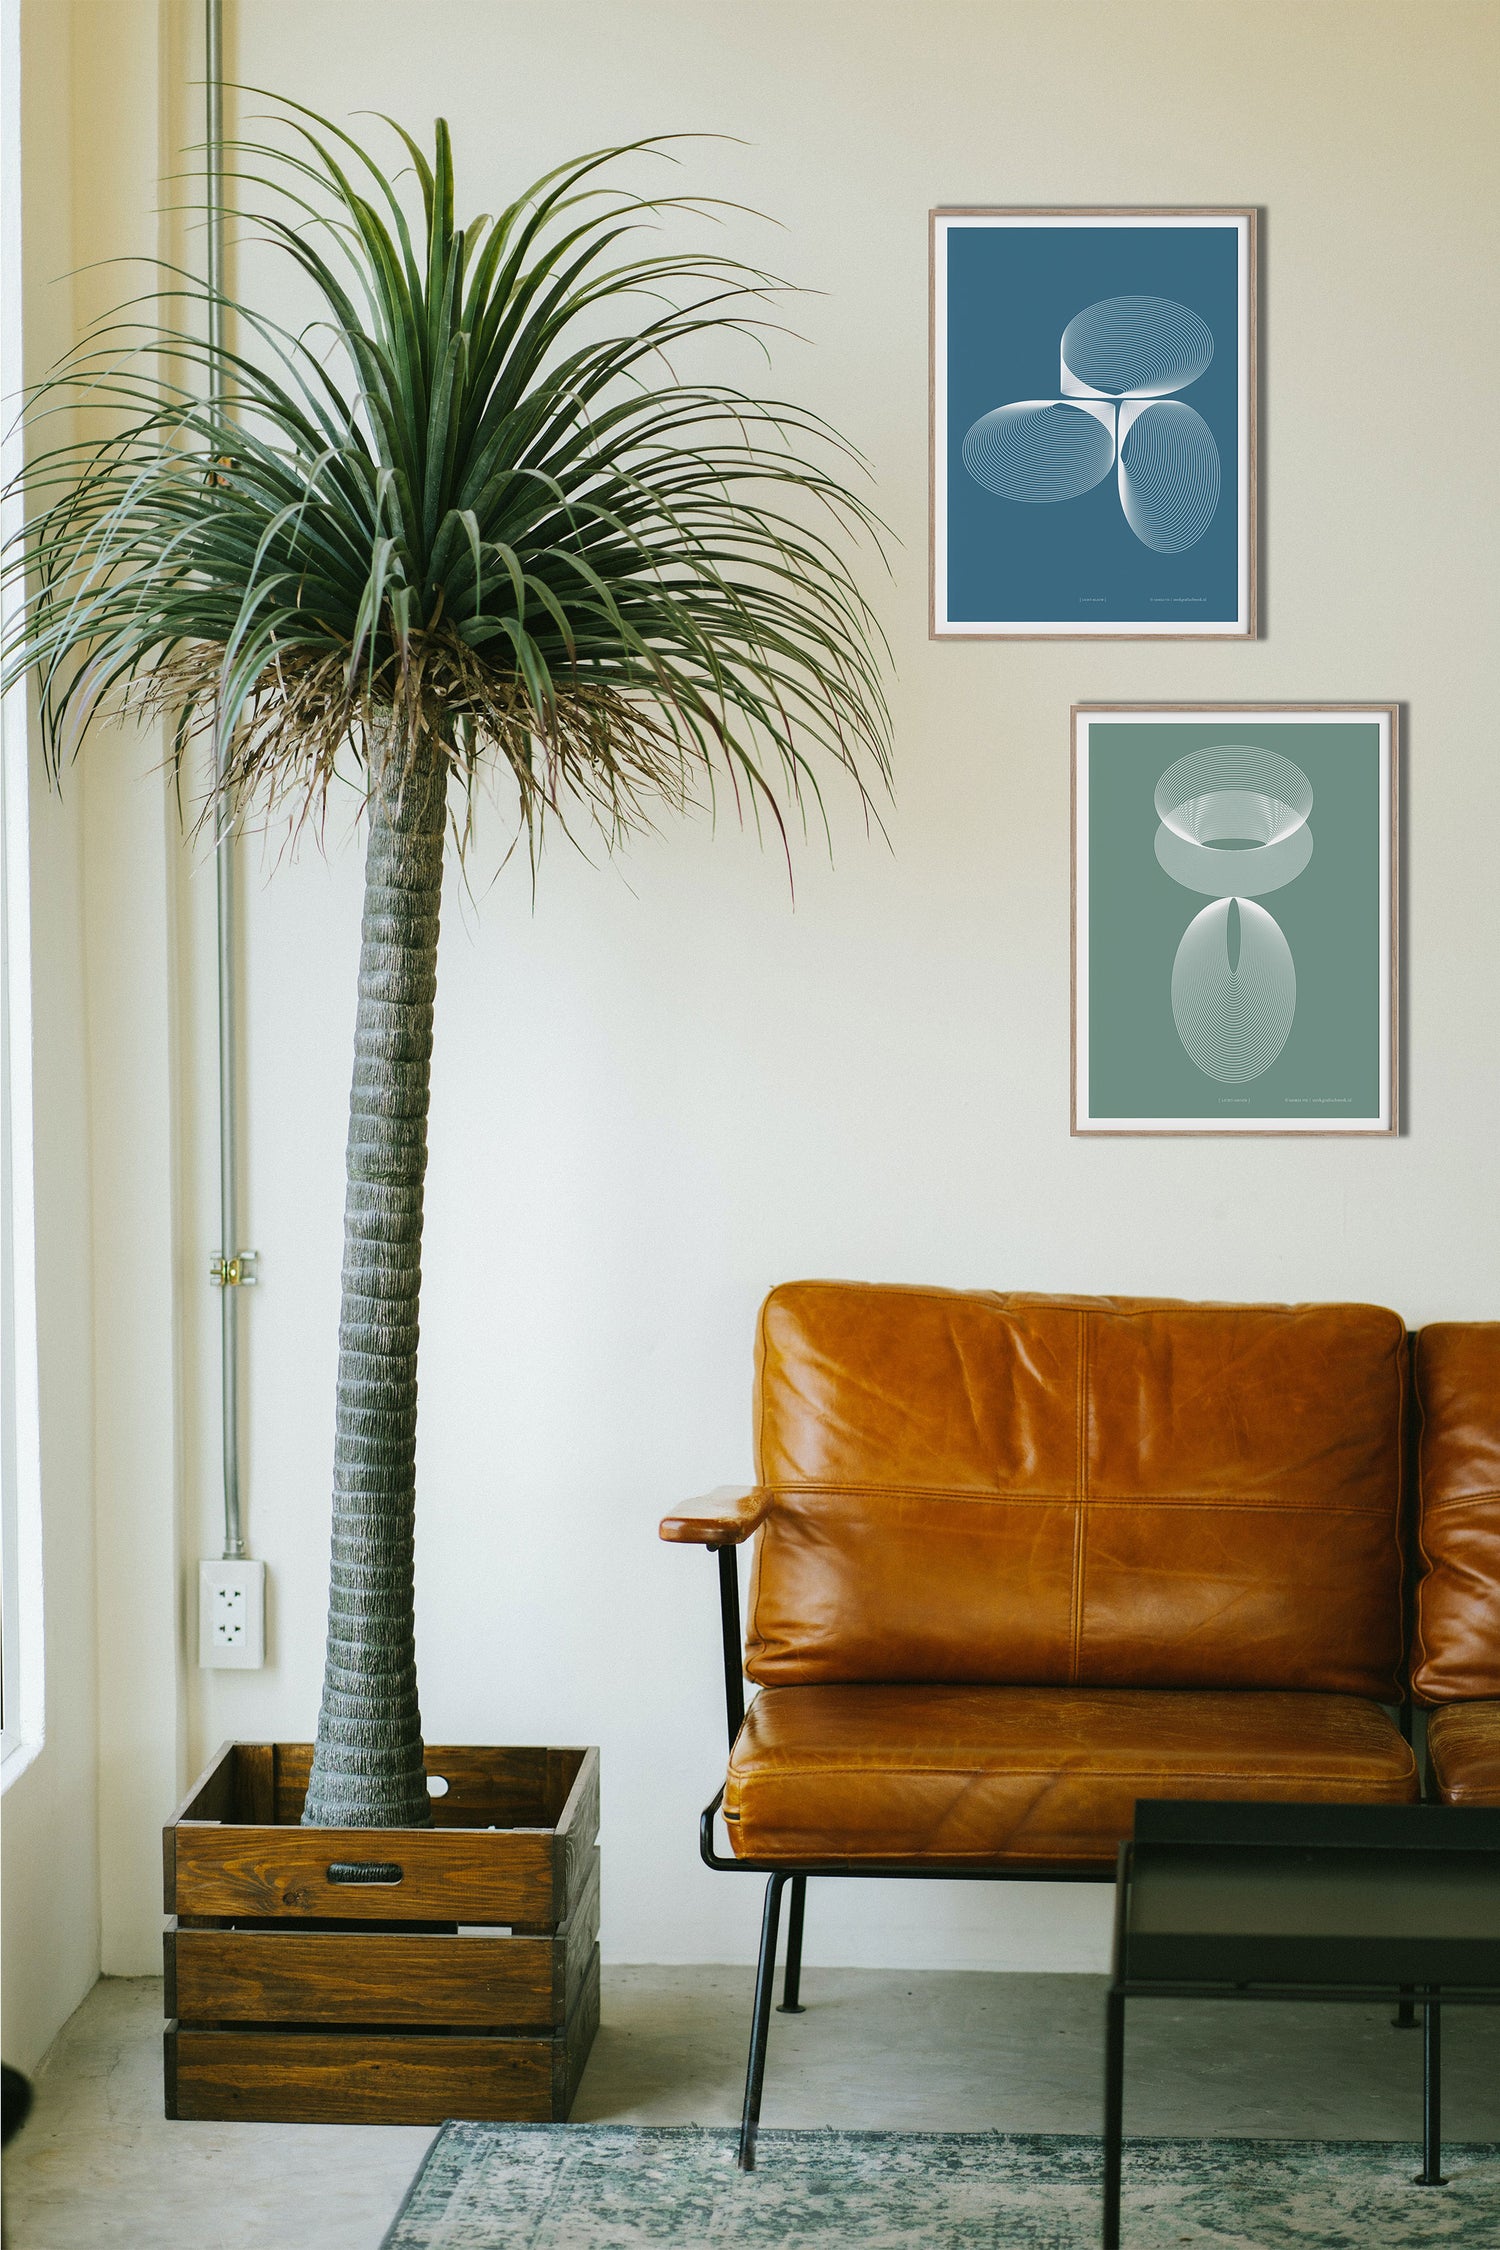 Poster "Licht-blauw" en "Licht-groen" ingelijst, aan een wand boven een sofa met een grote plant (boom)